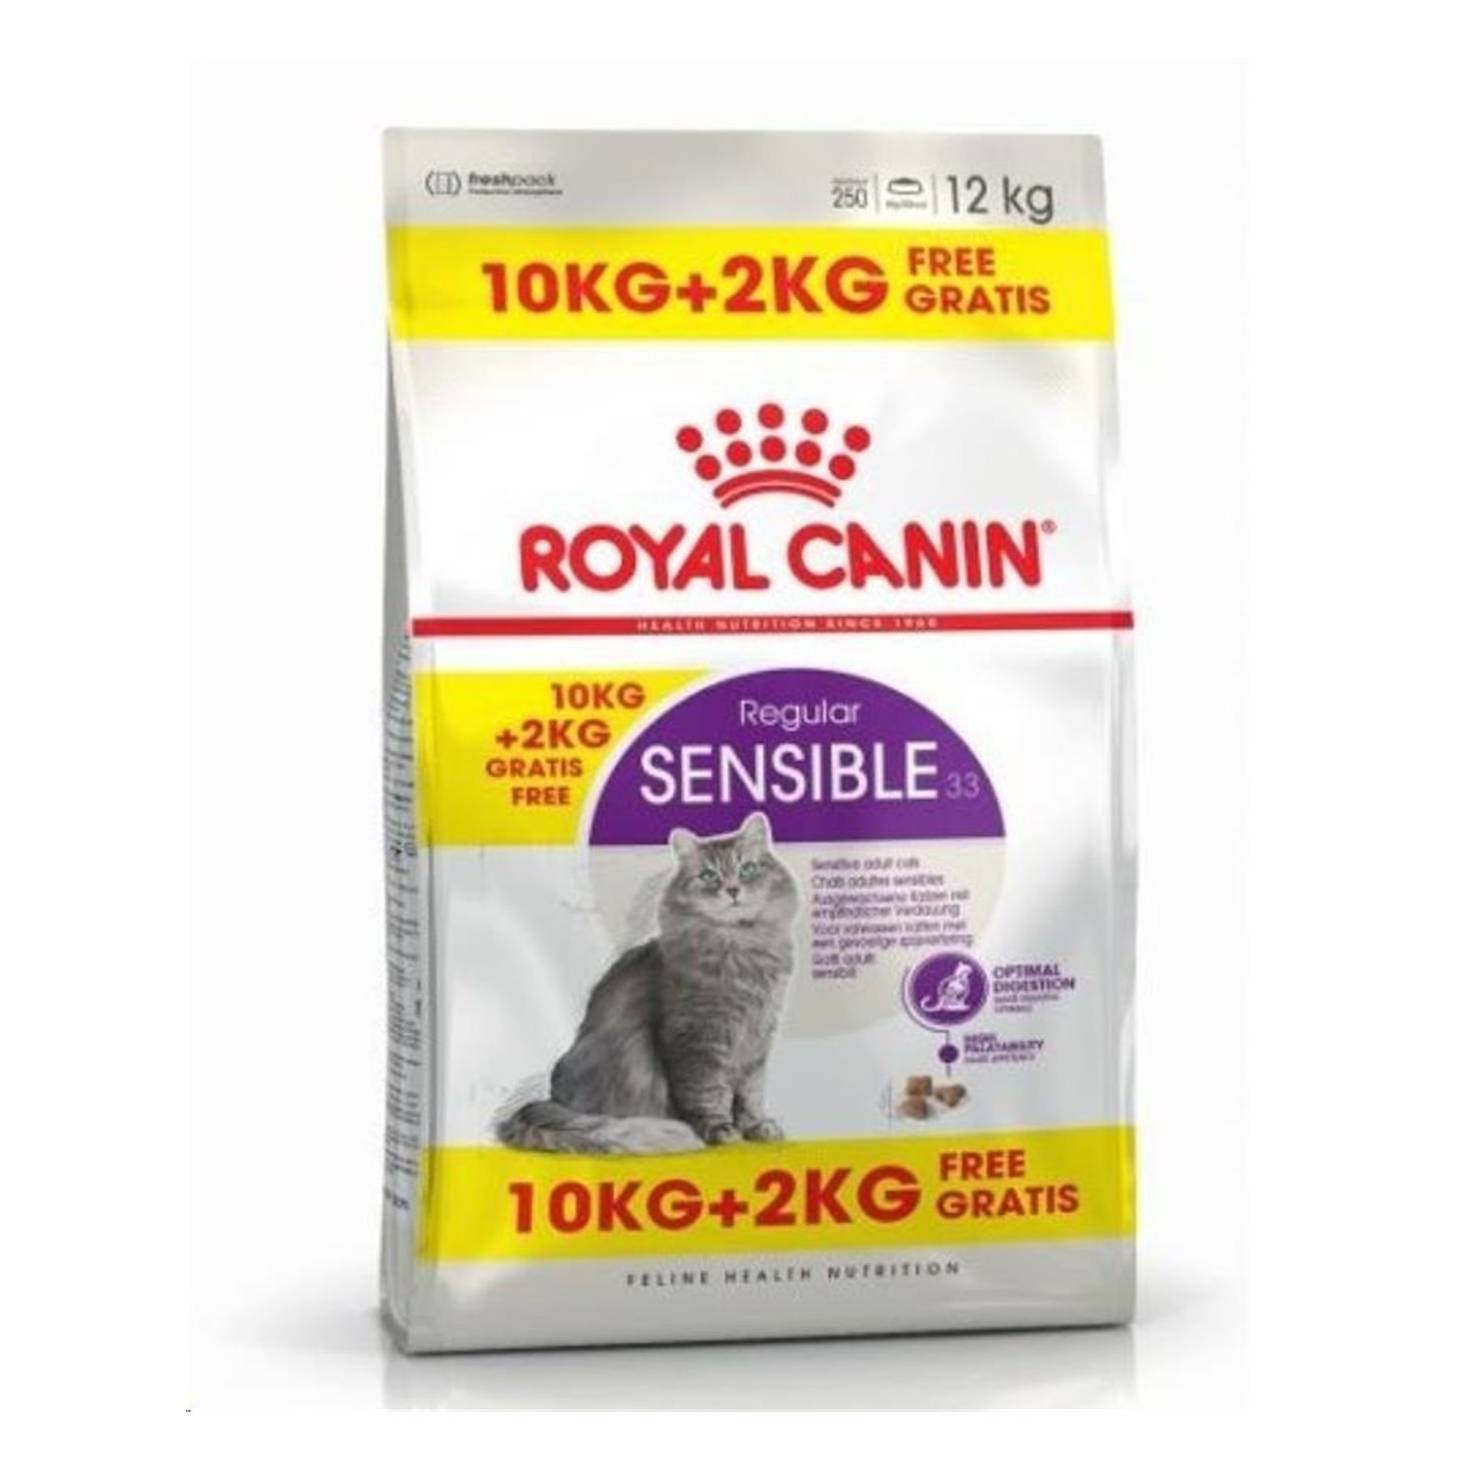 Royal Canin Sensible 33 102kg